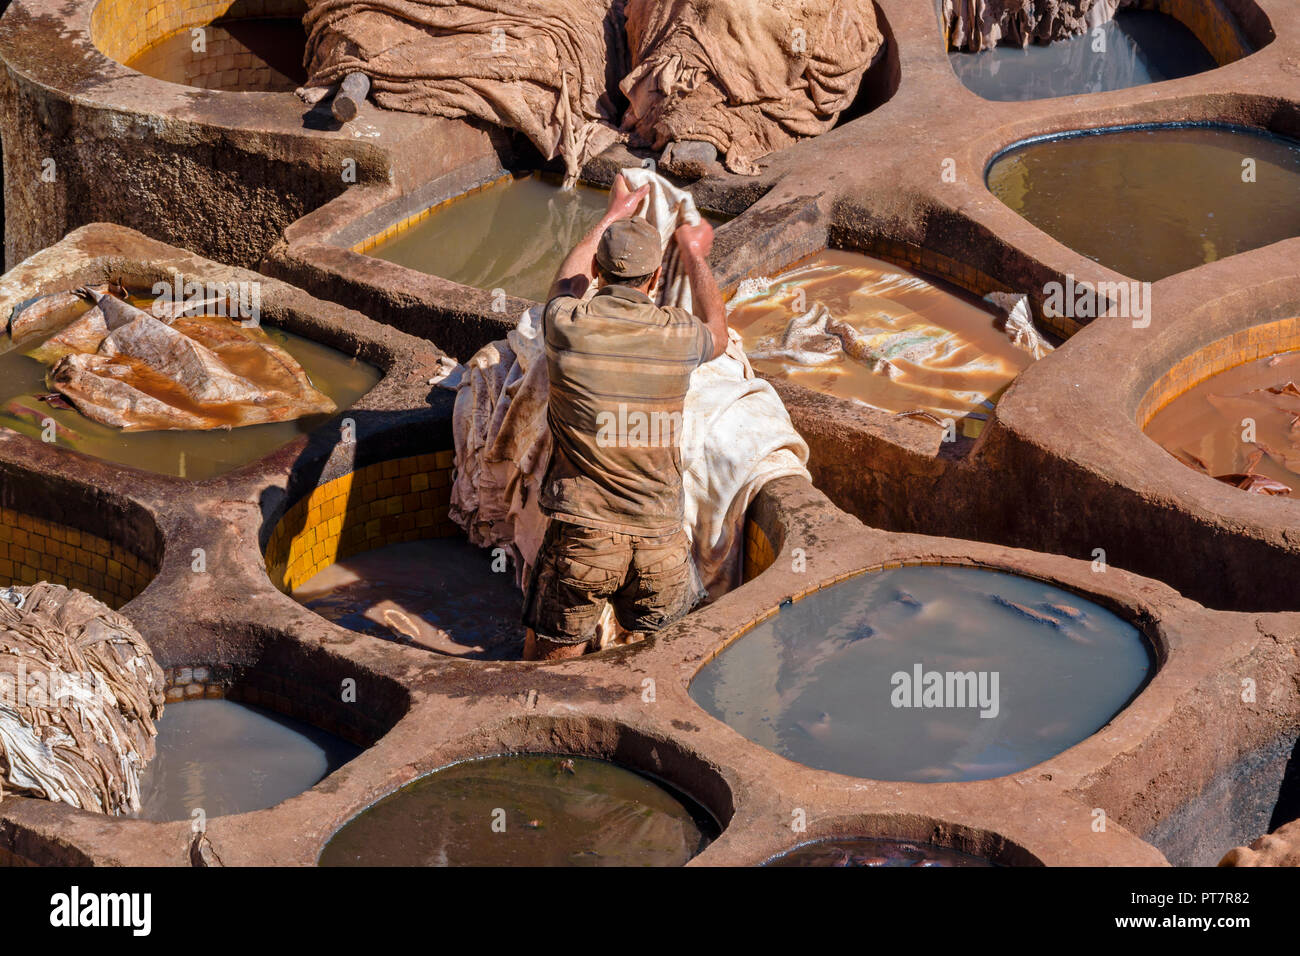 Il Marocco Marrakech conceria cuoio singolo TANNER lavorando in tini in piastrelle di pigmenti colorati e pelli Foto Stock